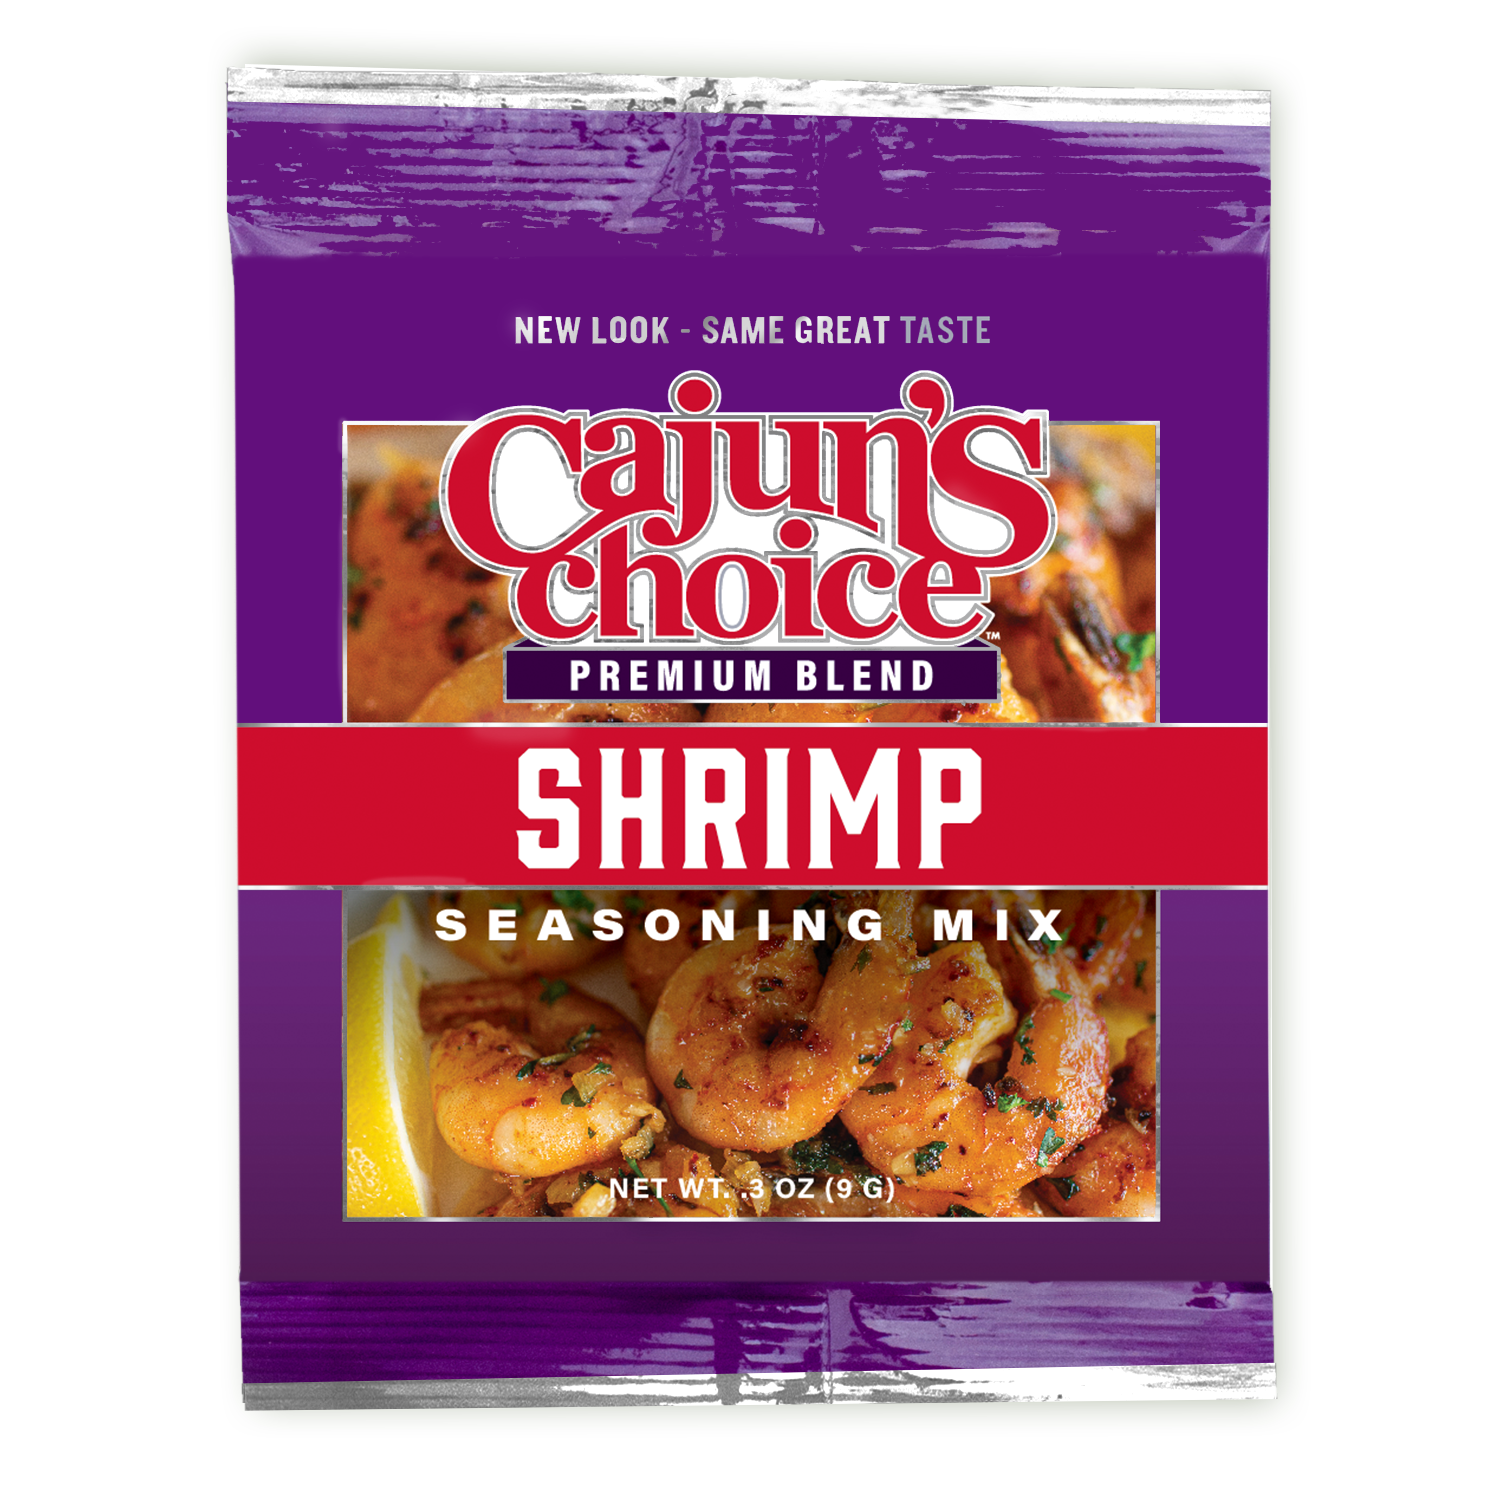 Cajuns Choice Louisiana Foods Seasoning Mix, Cajun Shrimp - 0.3 oz